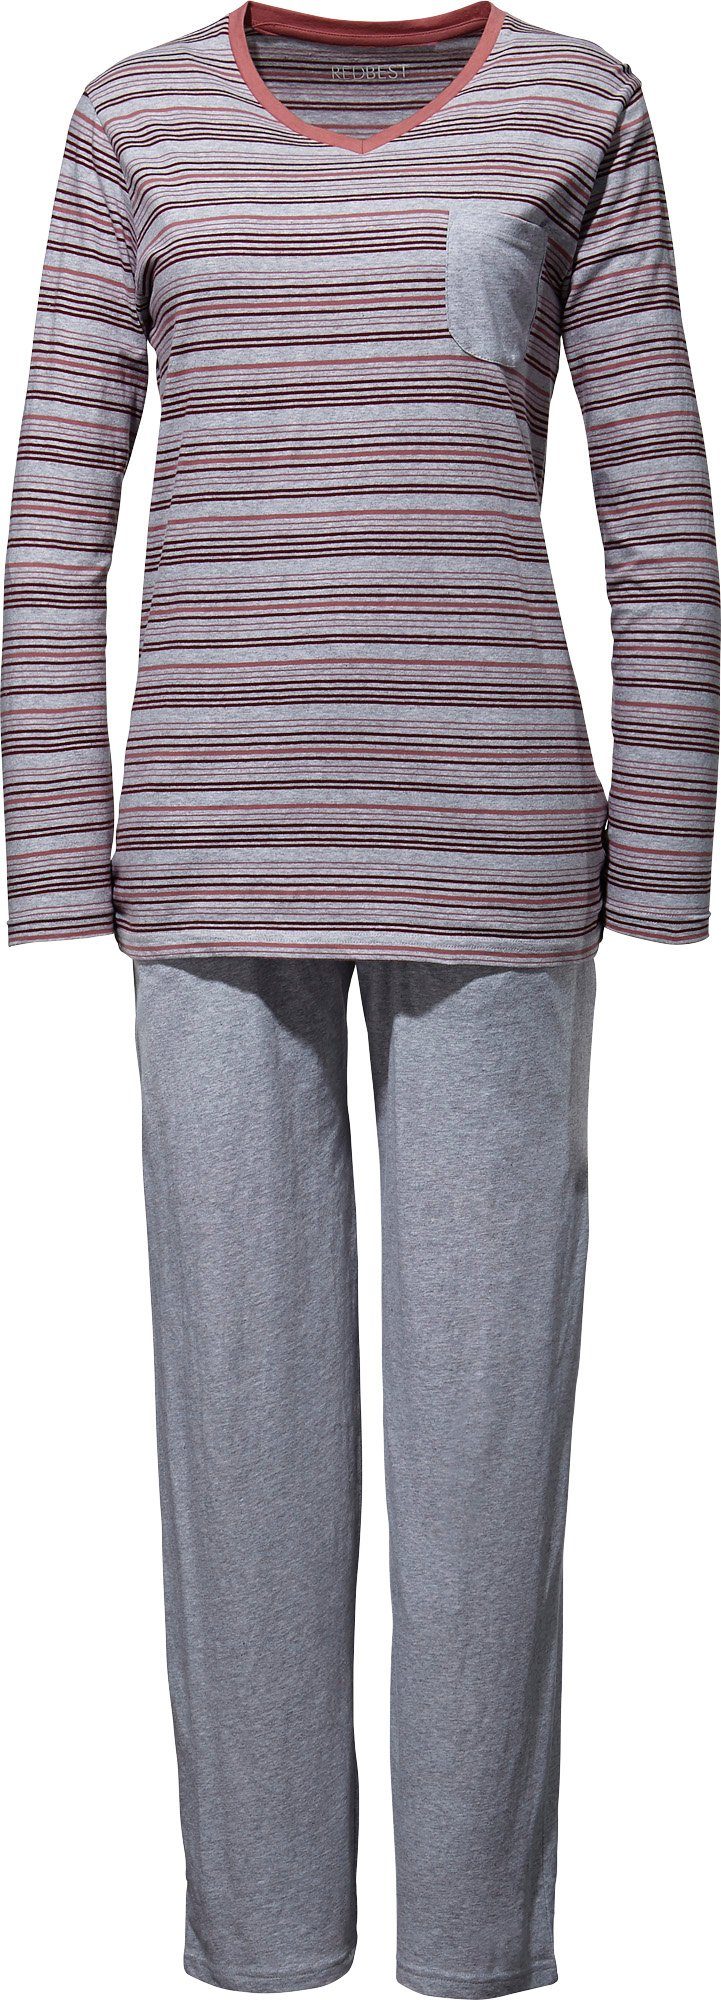 Damen-Schlafanzug Single-Jersey Streifen REDBEST Pyjama